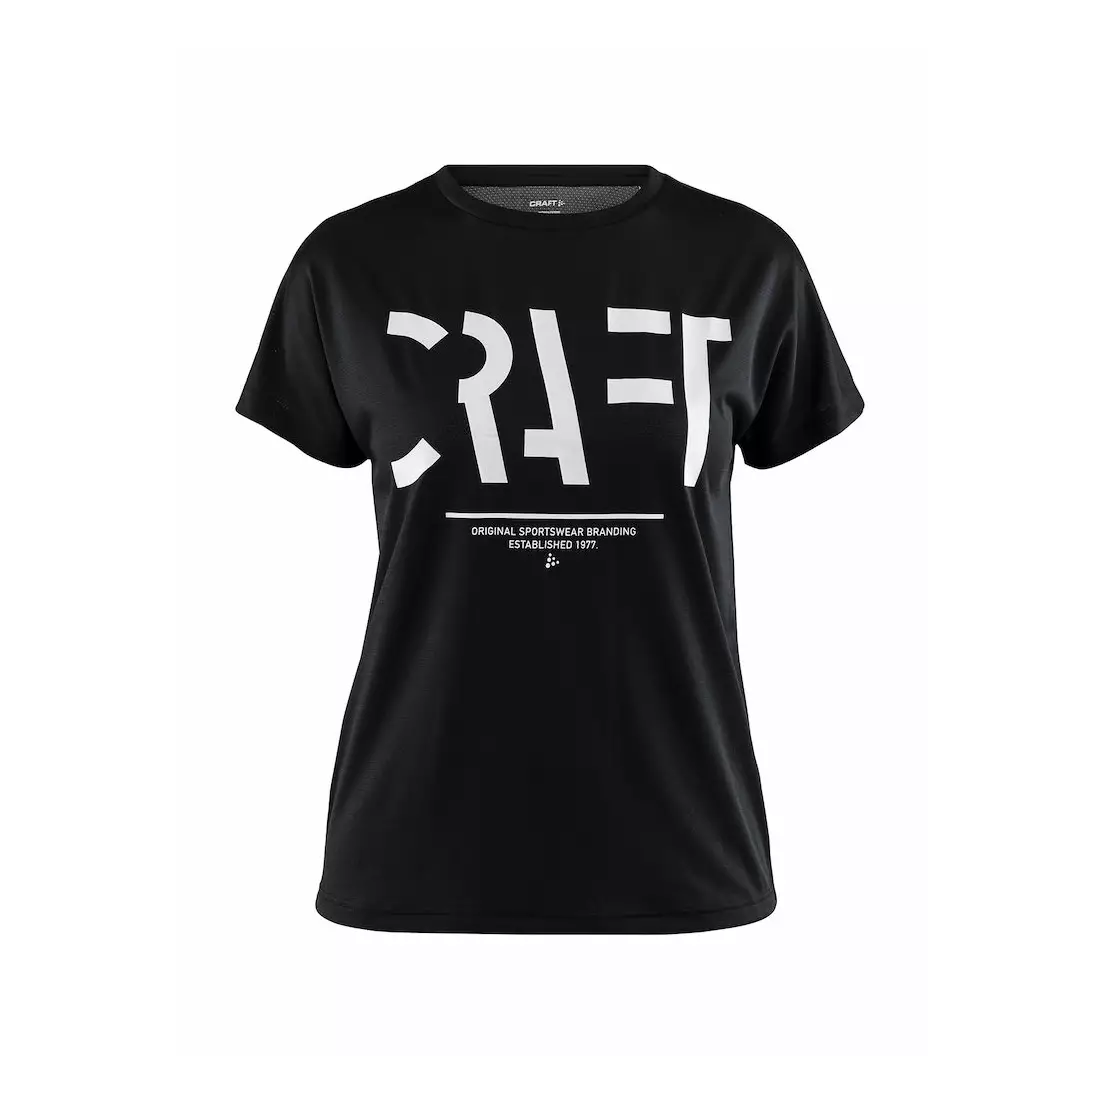 CRAFT EAZE MESH dámské sportovní / běžecké tričko černé 1907019-999000